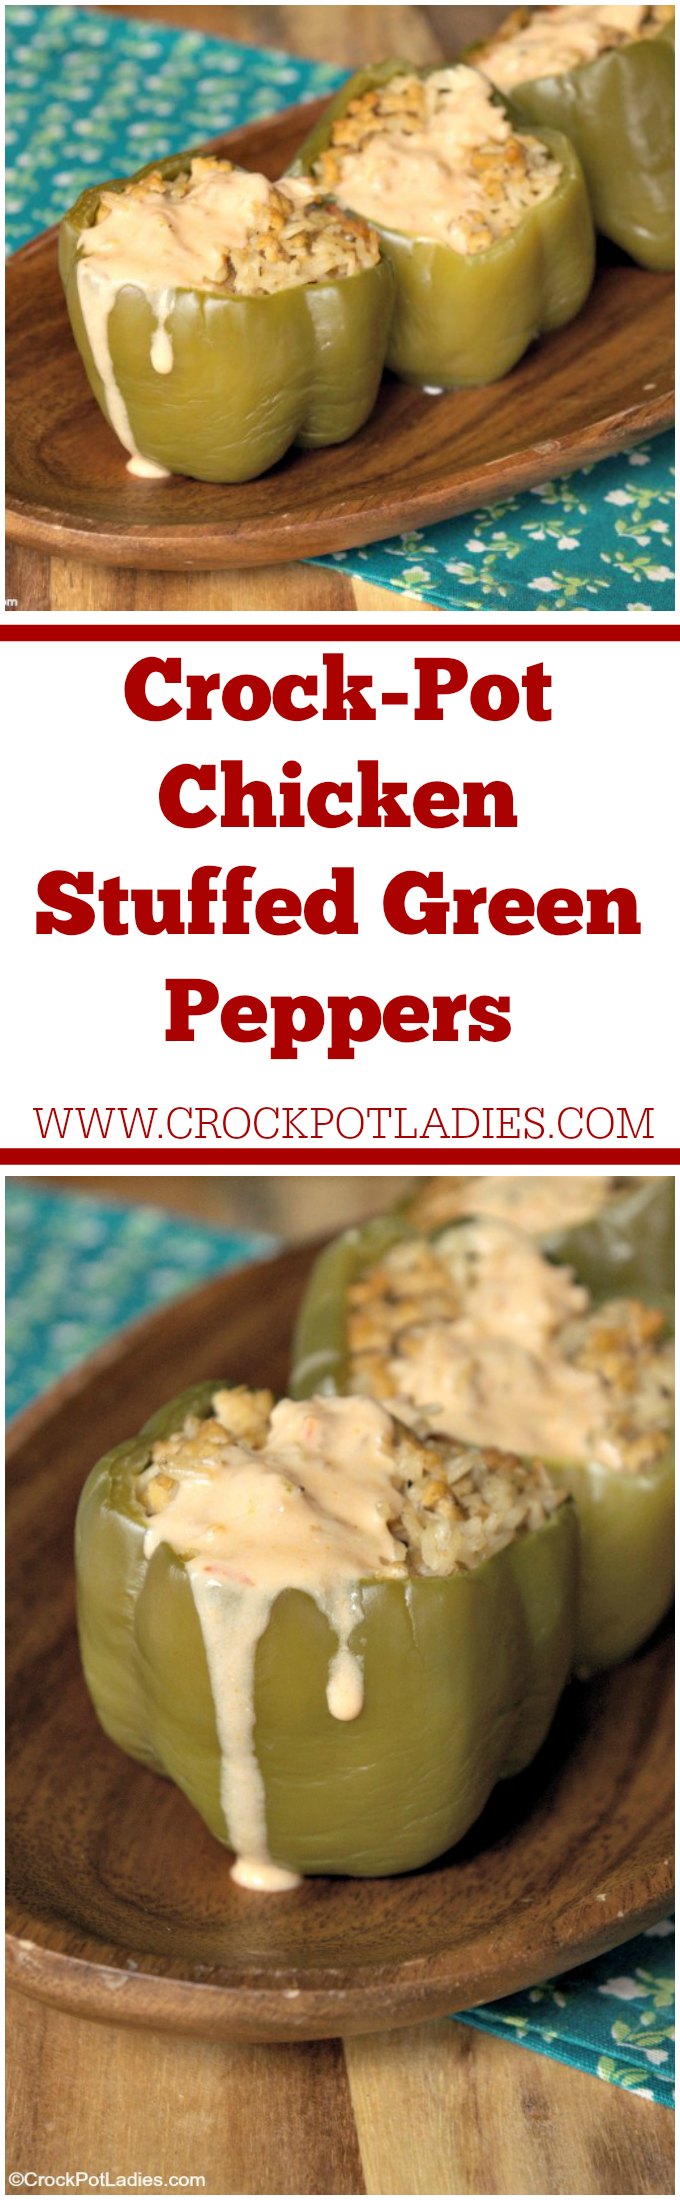 Crock-Pot Chicken Stuffed Green Peppers